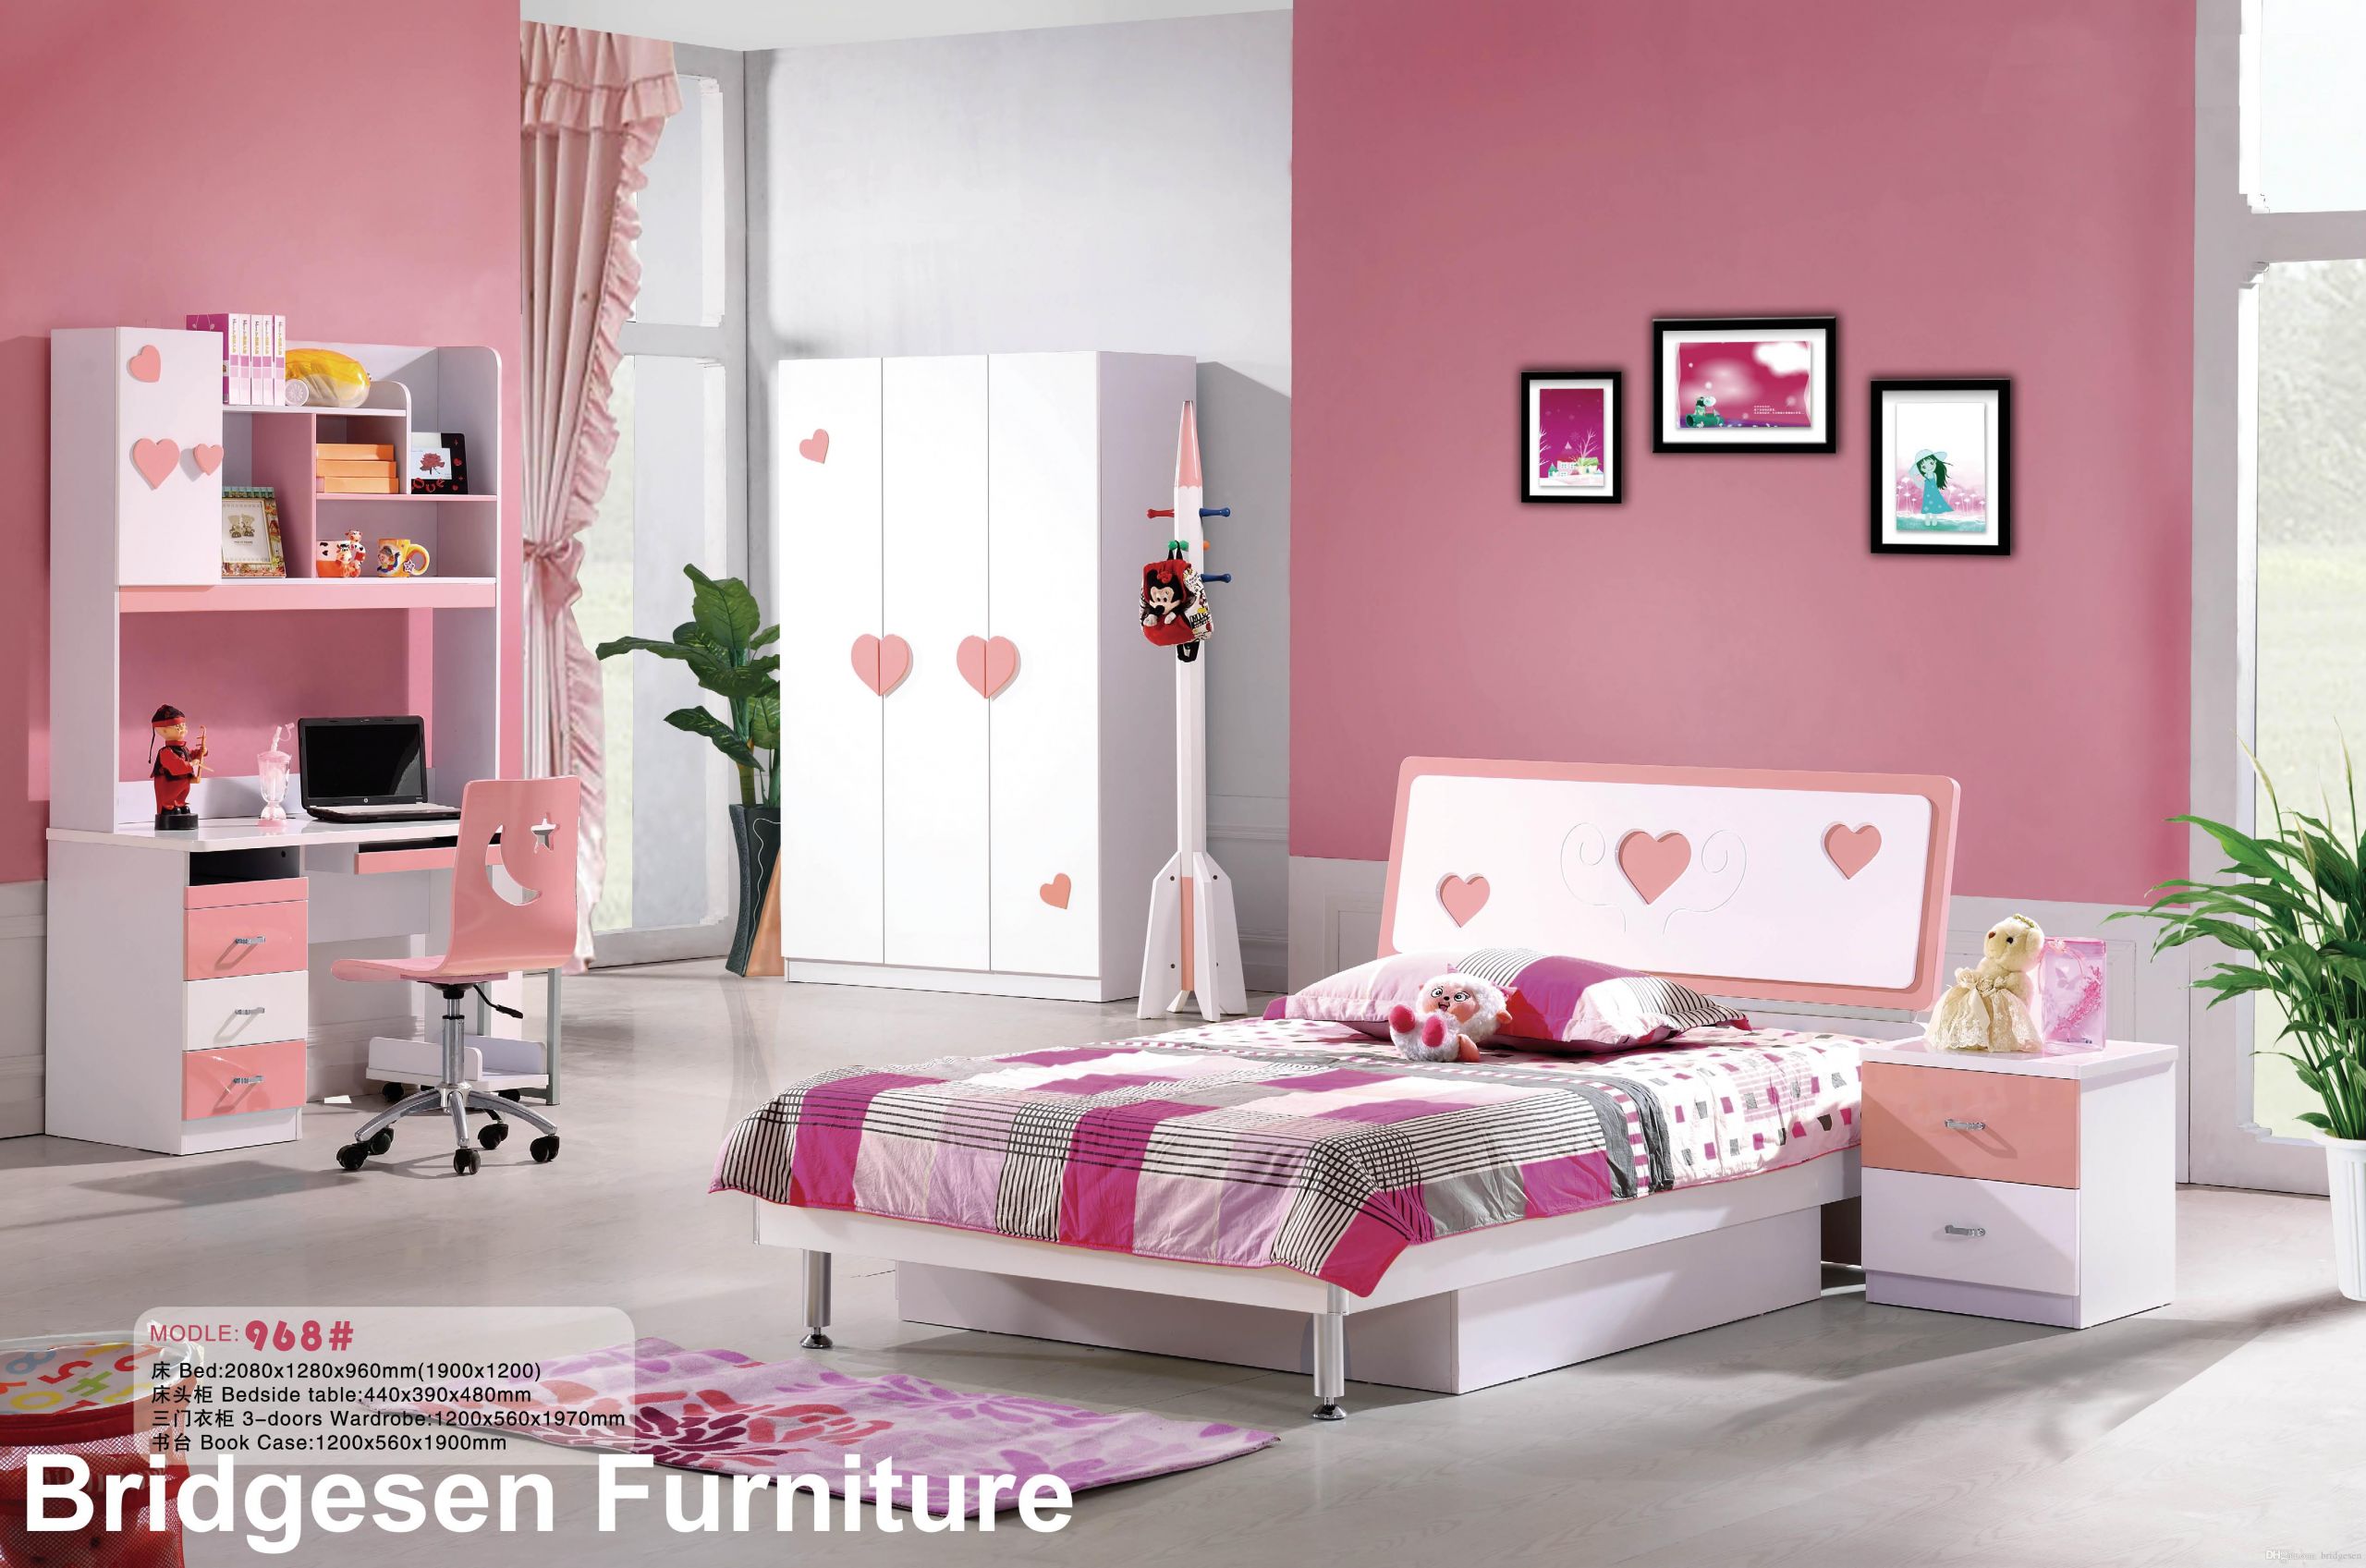 Toddler Girl Bedroom Furniture
 2017 Mdf Teenage Girl Kids Bedroom Furniture Set With 2